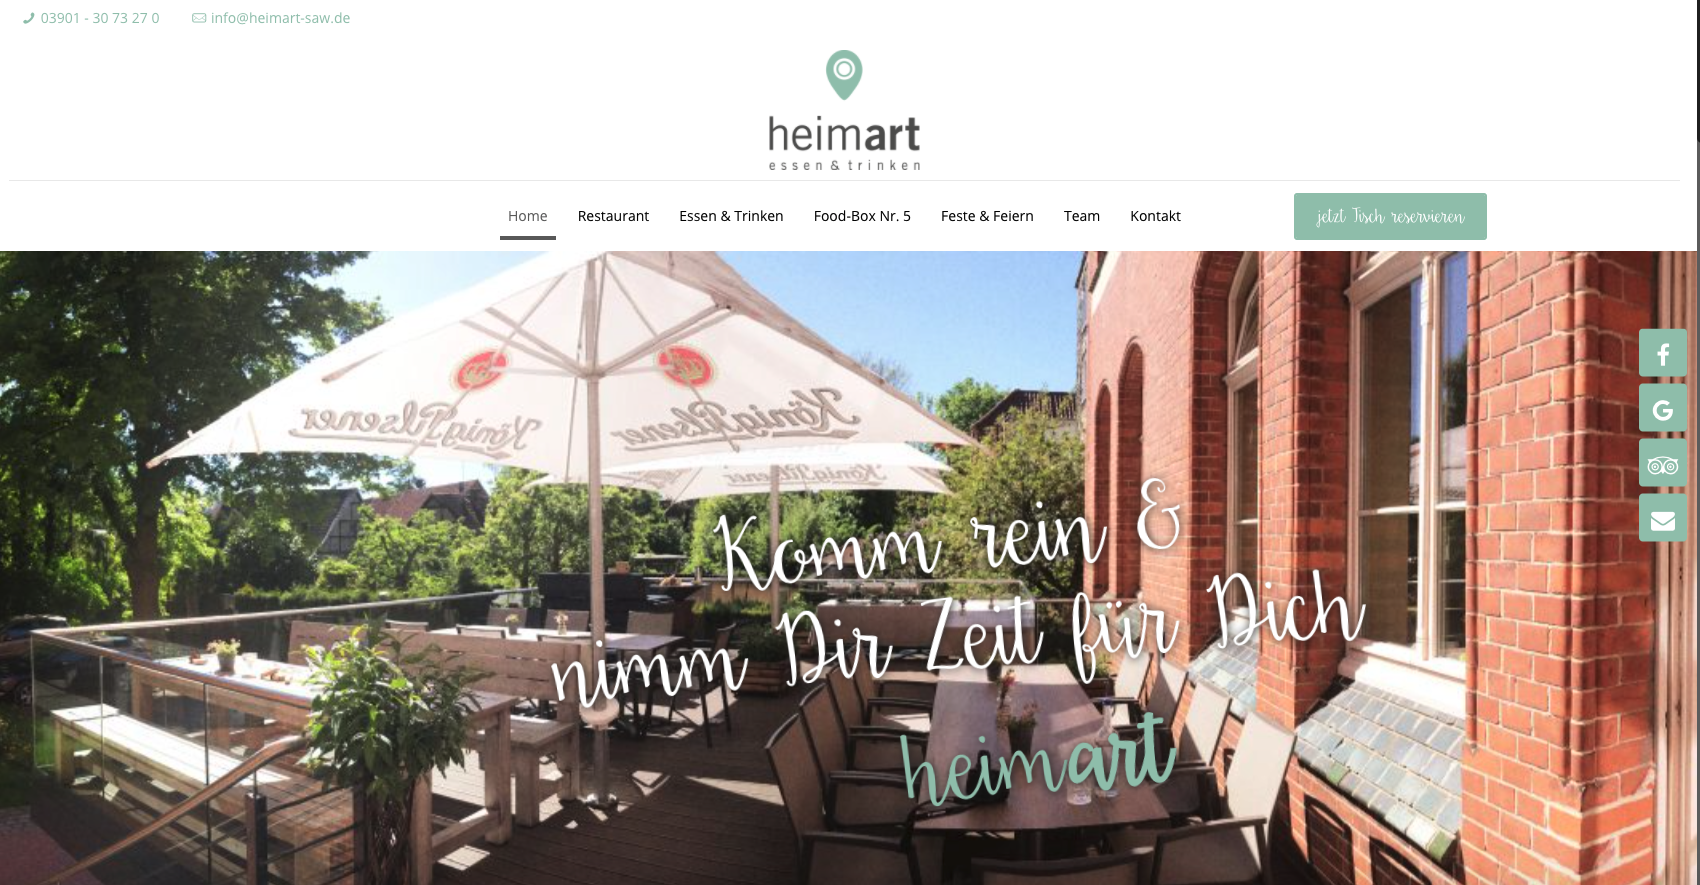 Startseite Website Restaurant heimart